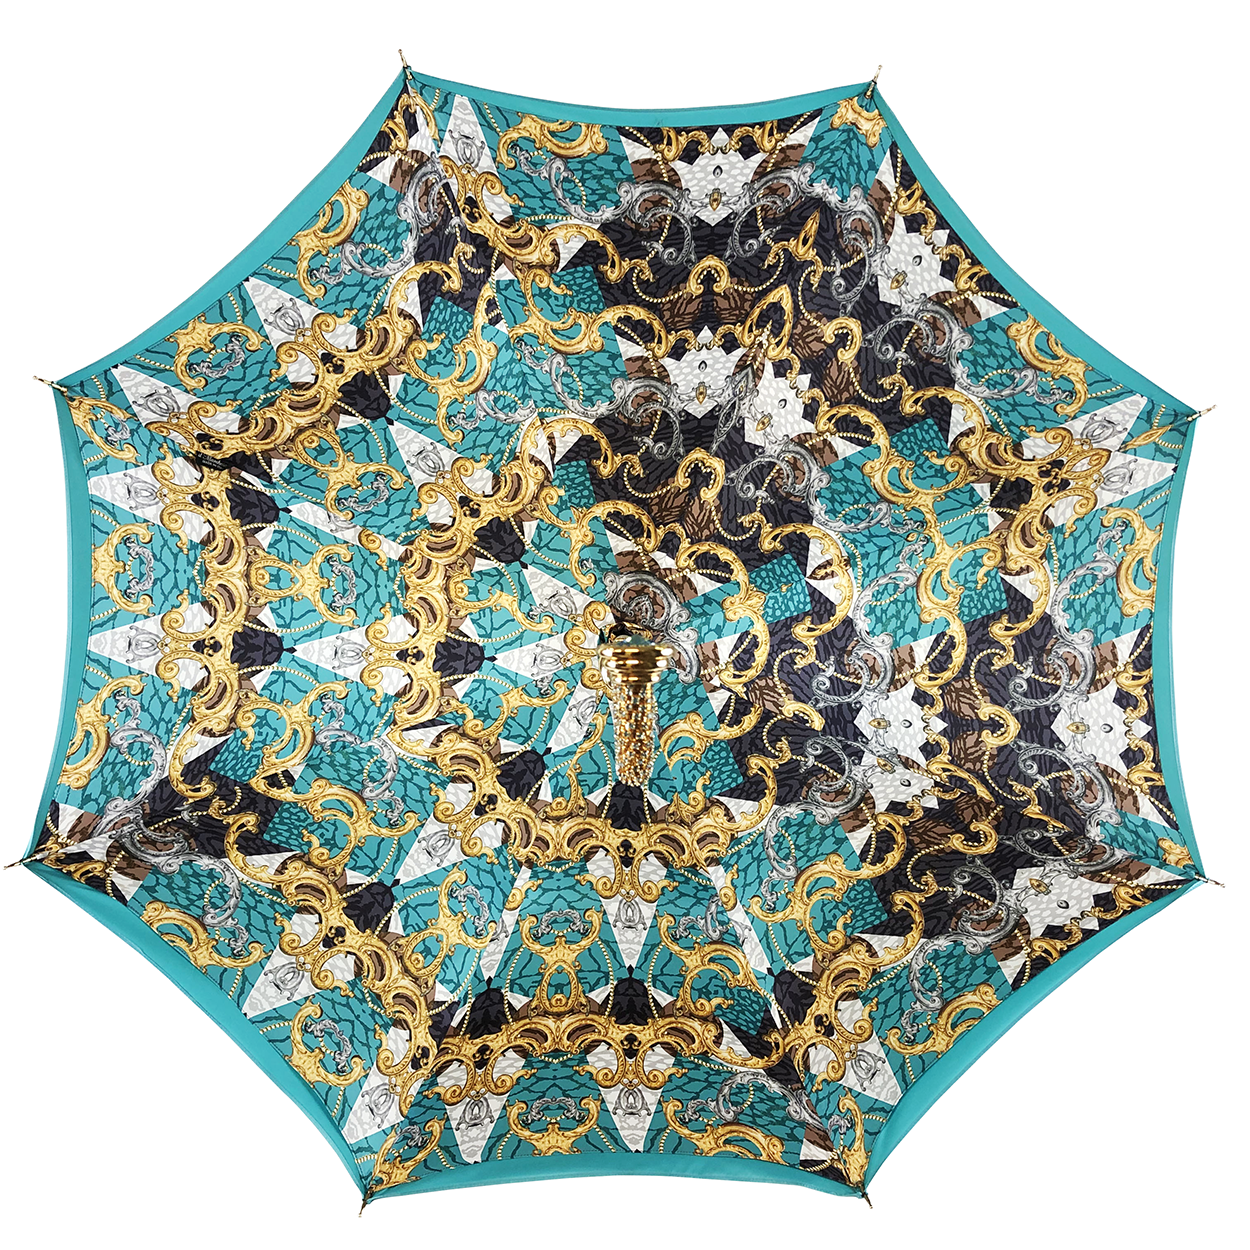 Fantastic Acquamarine Umbrella